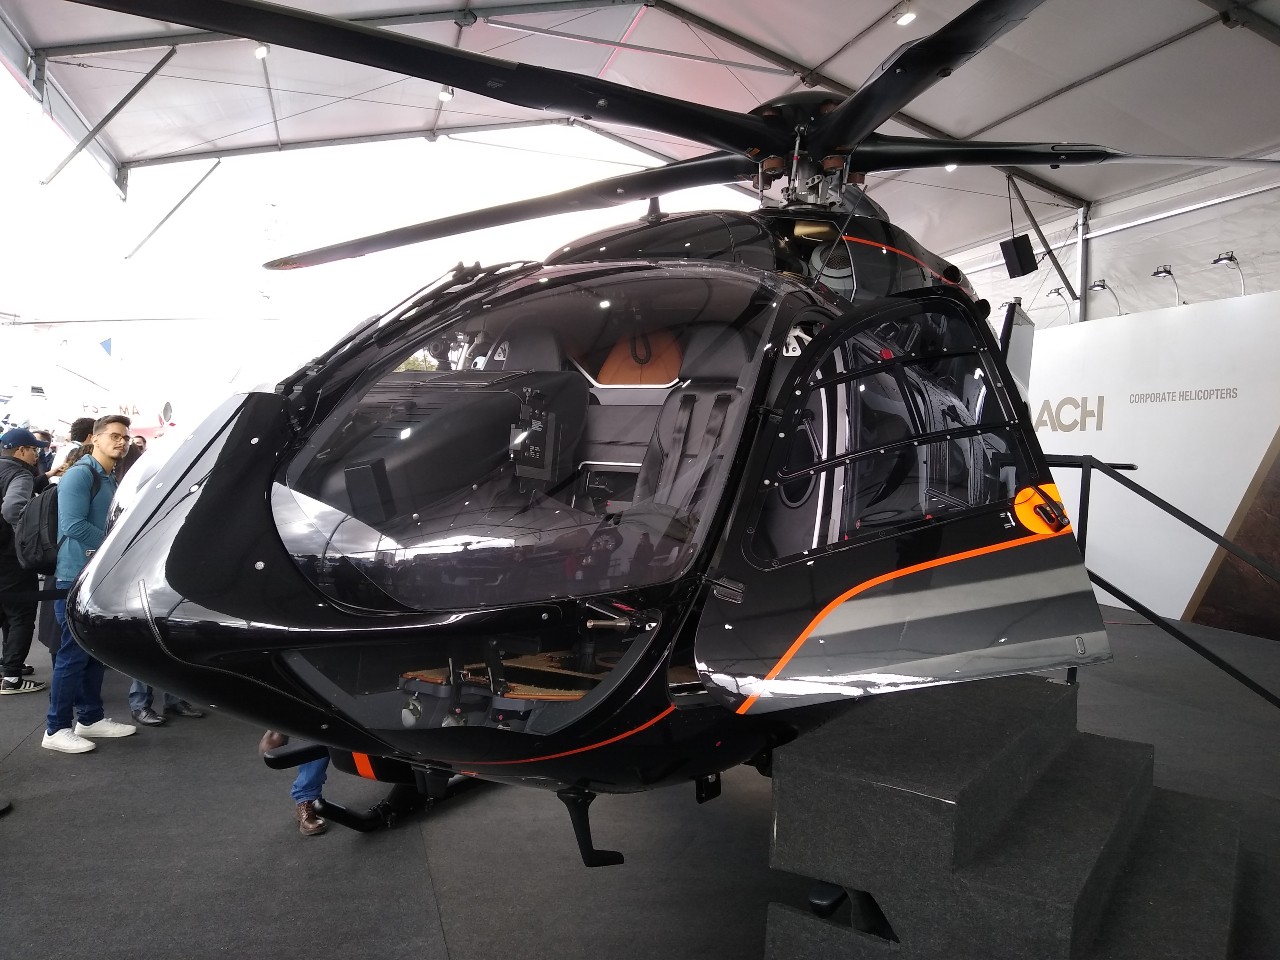 Helicóptero do mesmo modelo de Neymar em exposição em SP (Foto: Leonardo Ávila)